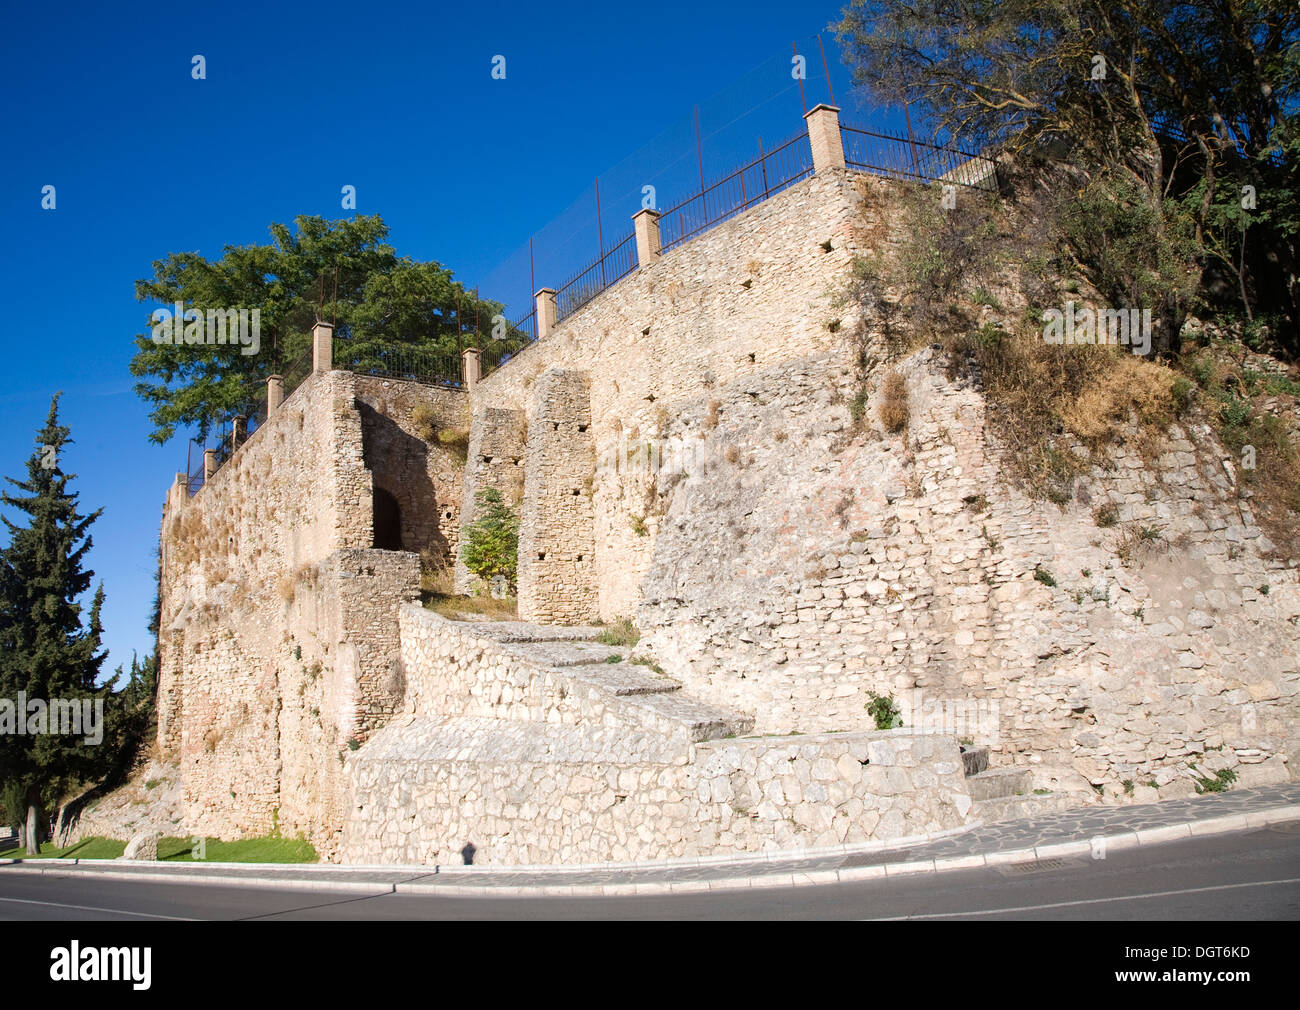 Part of the old city defensive walls  Cuesta las Imagenes, Ronda, Spain Stock Photo